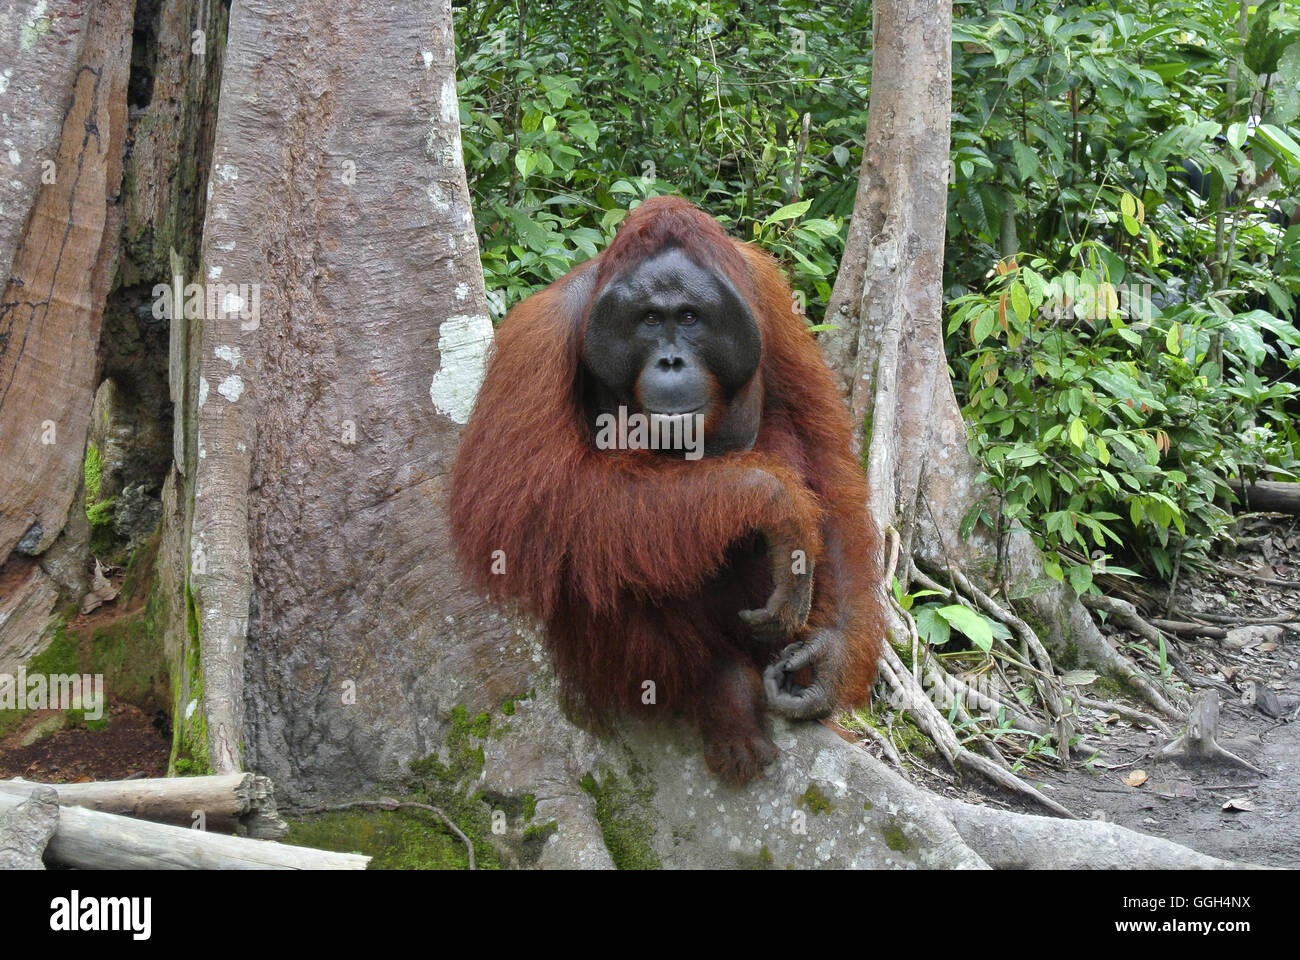 L'orang-outan, l'Indonésie. Originaire d'Indonésie et Malaisie, les orangs-outans sont actuellement trouvés dans les forêts tropicales de Bornéo et Sumatra Banque D'Images